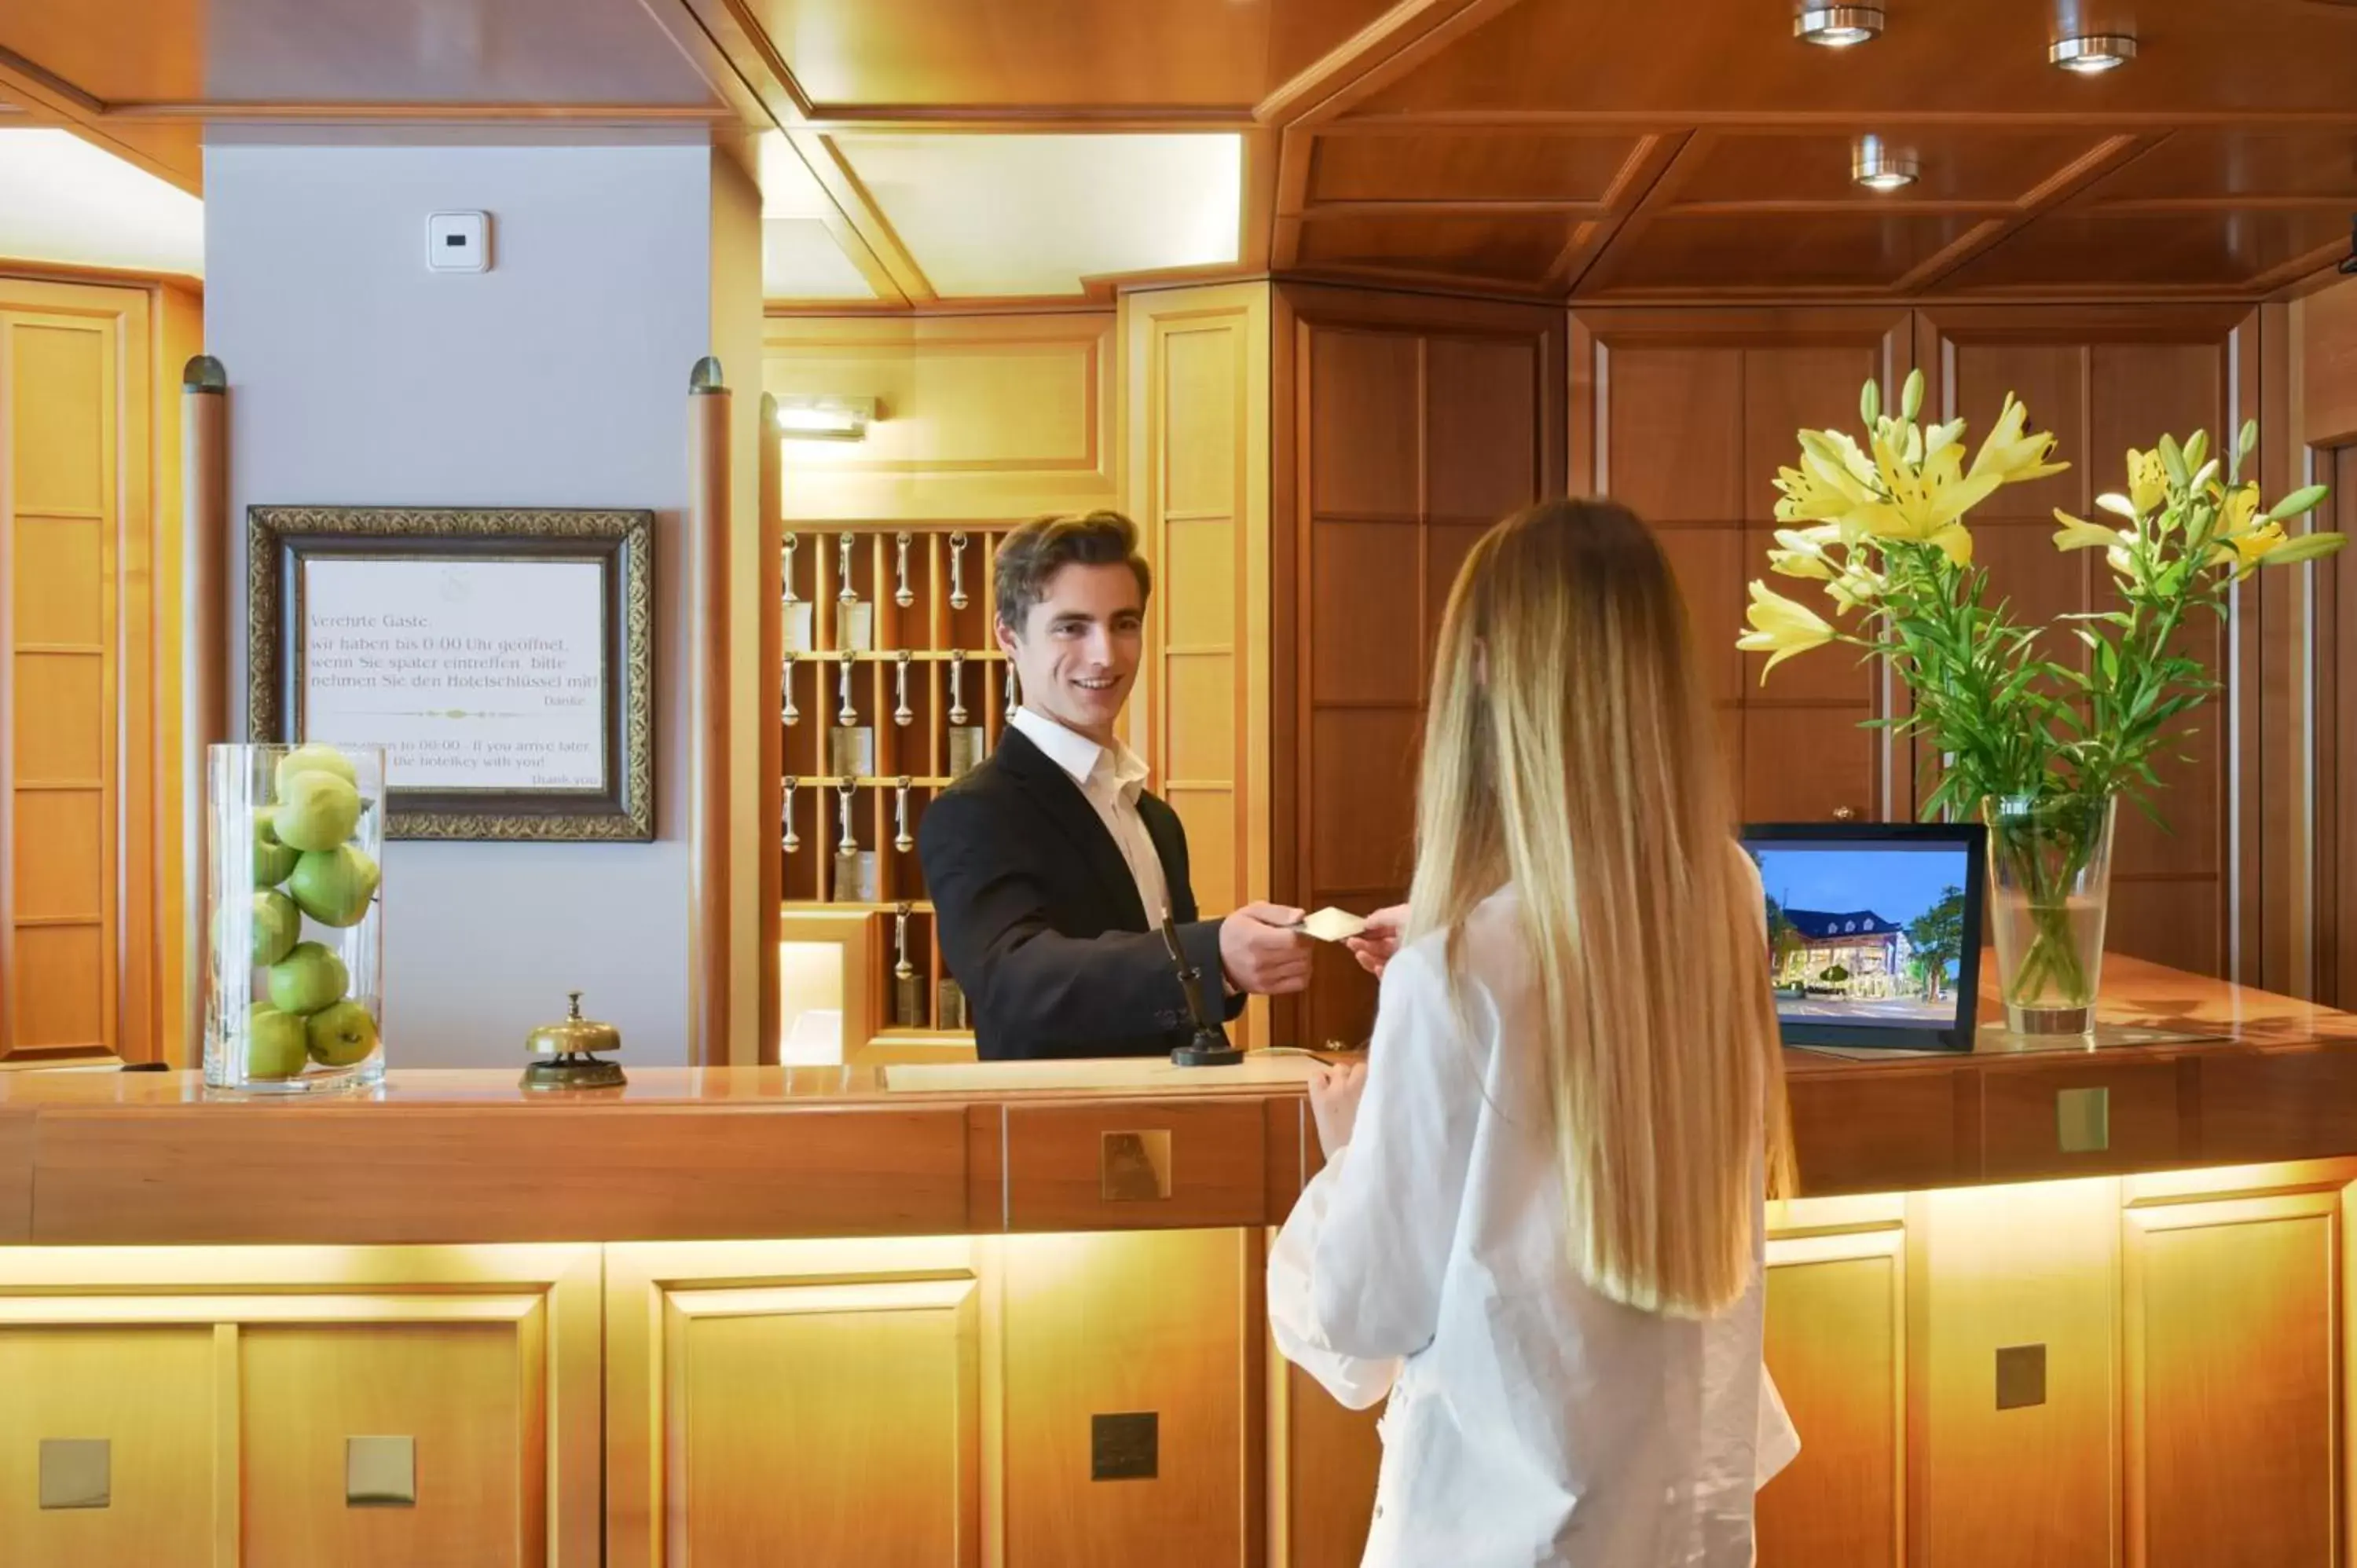 Lobby or reception in Hotel Säntis